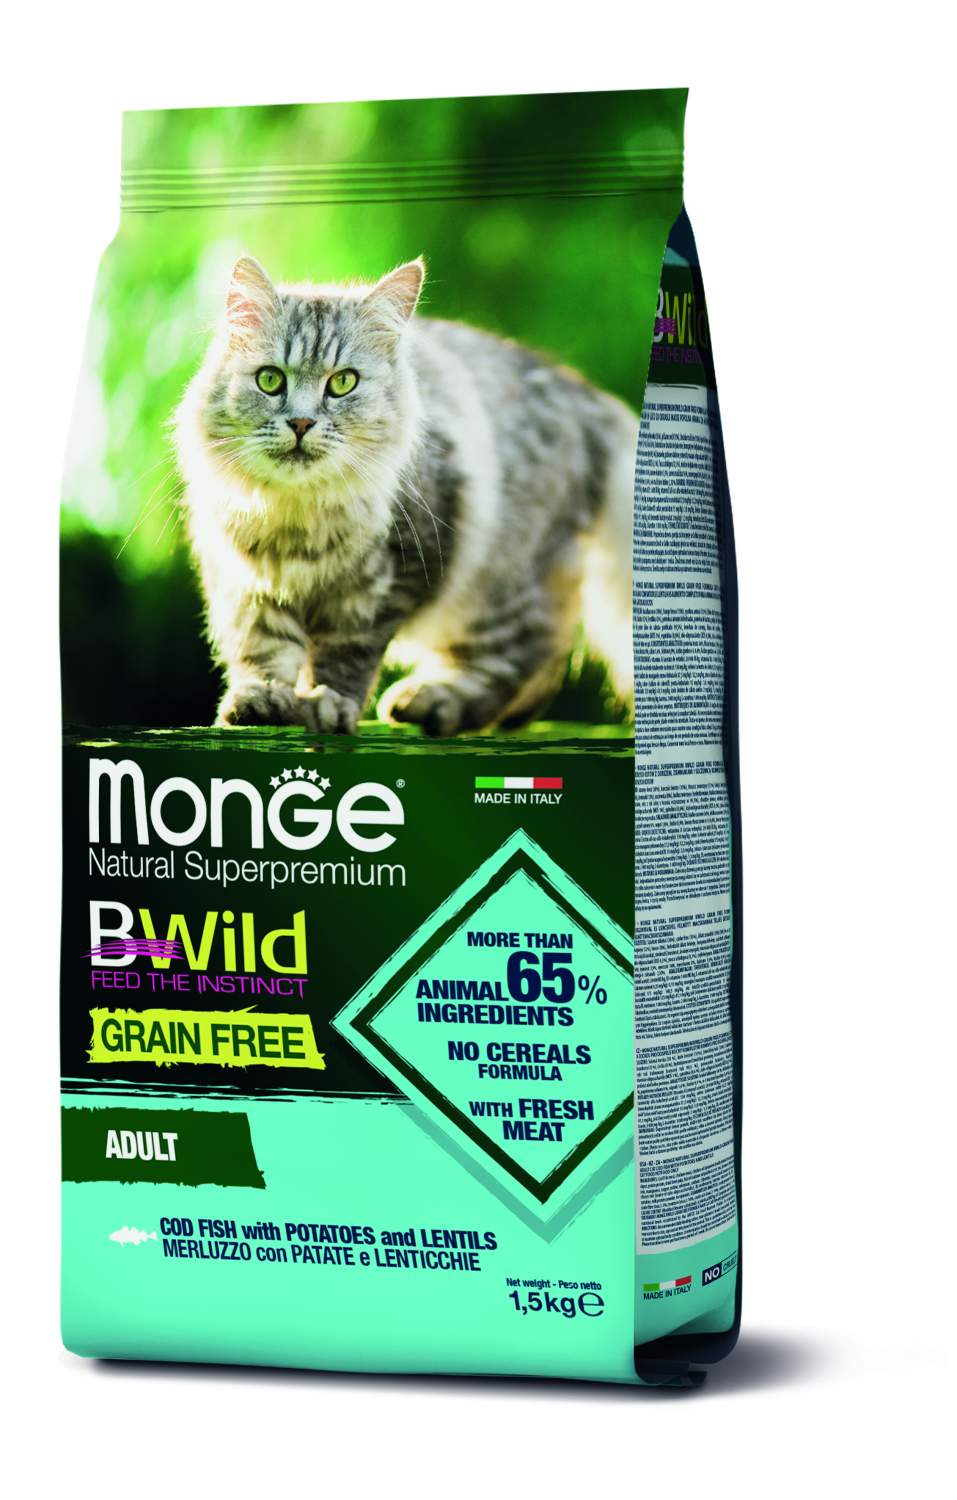 Купить сухой корм для кошек Monge Bwild Grain Free Adult с треской,  картофелем и чечевицей, 1,5кг, цены на Мегамаркет | Артикул: 600001738275